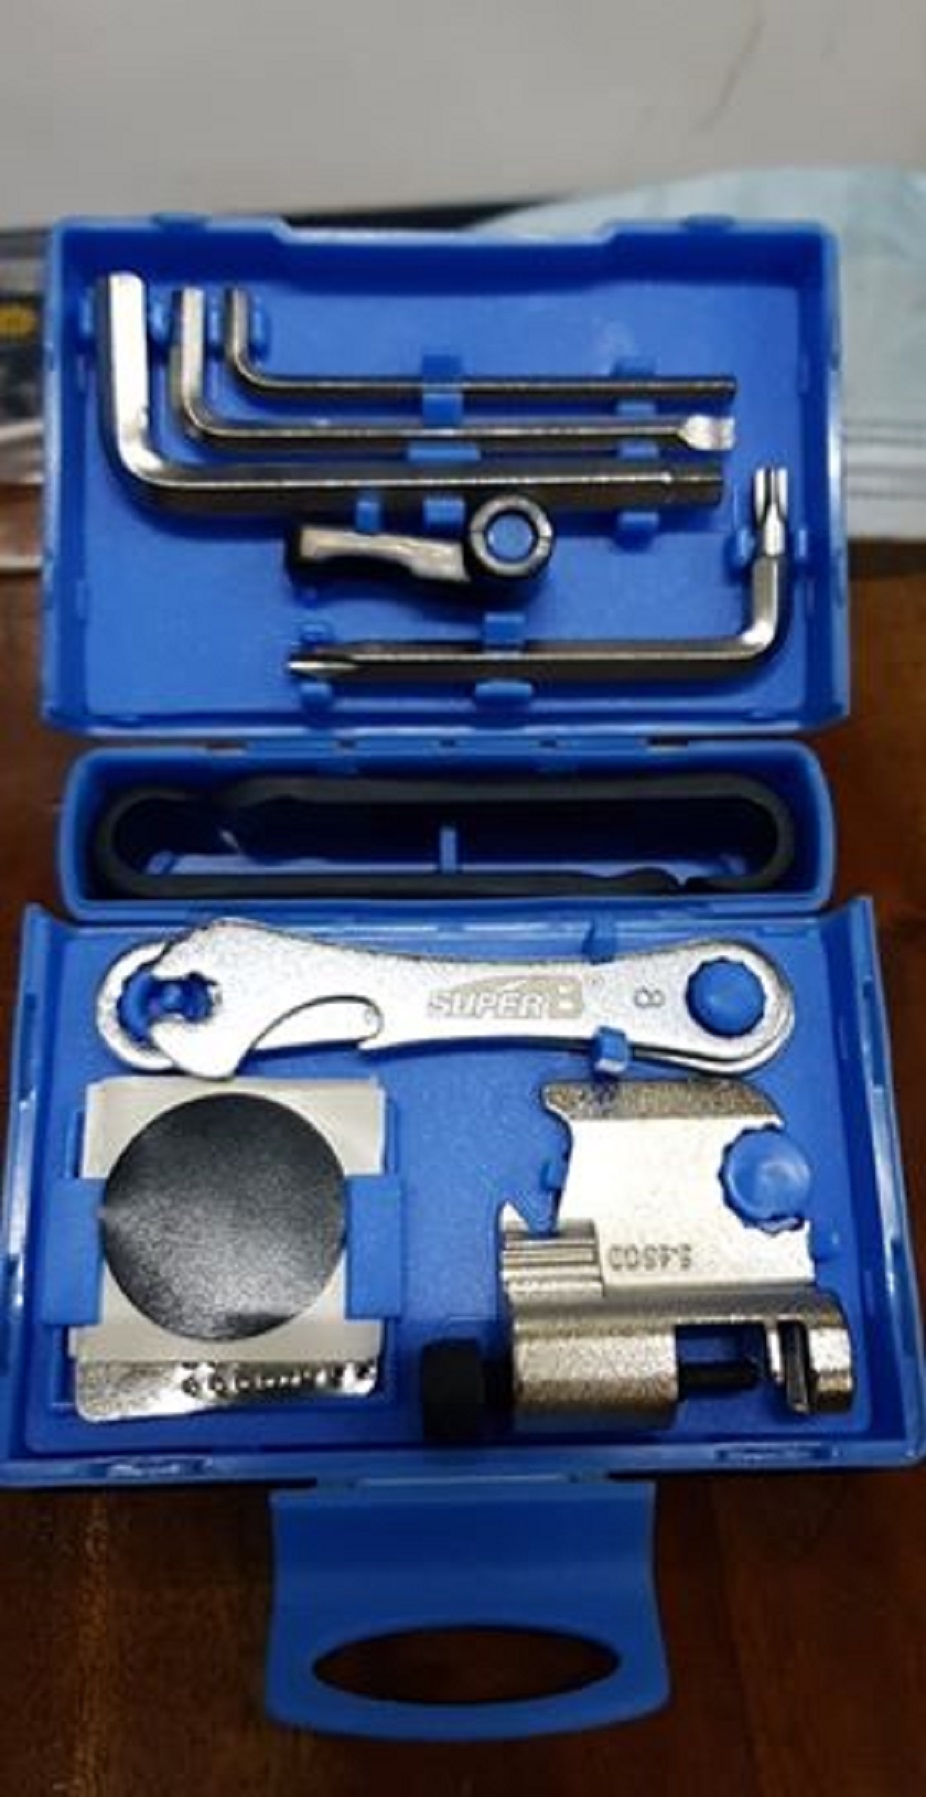 super b tool set